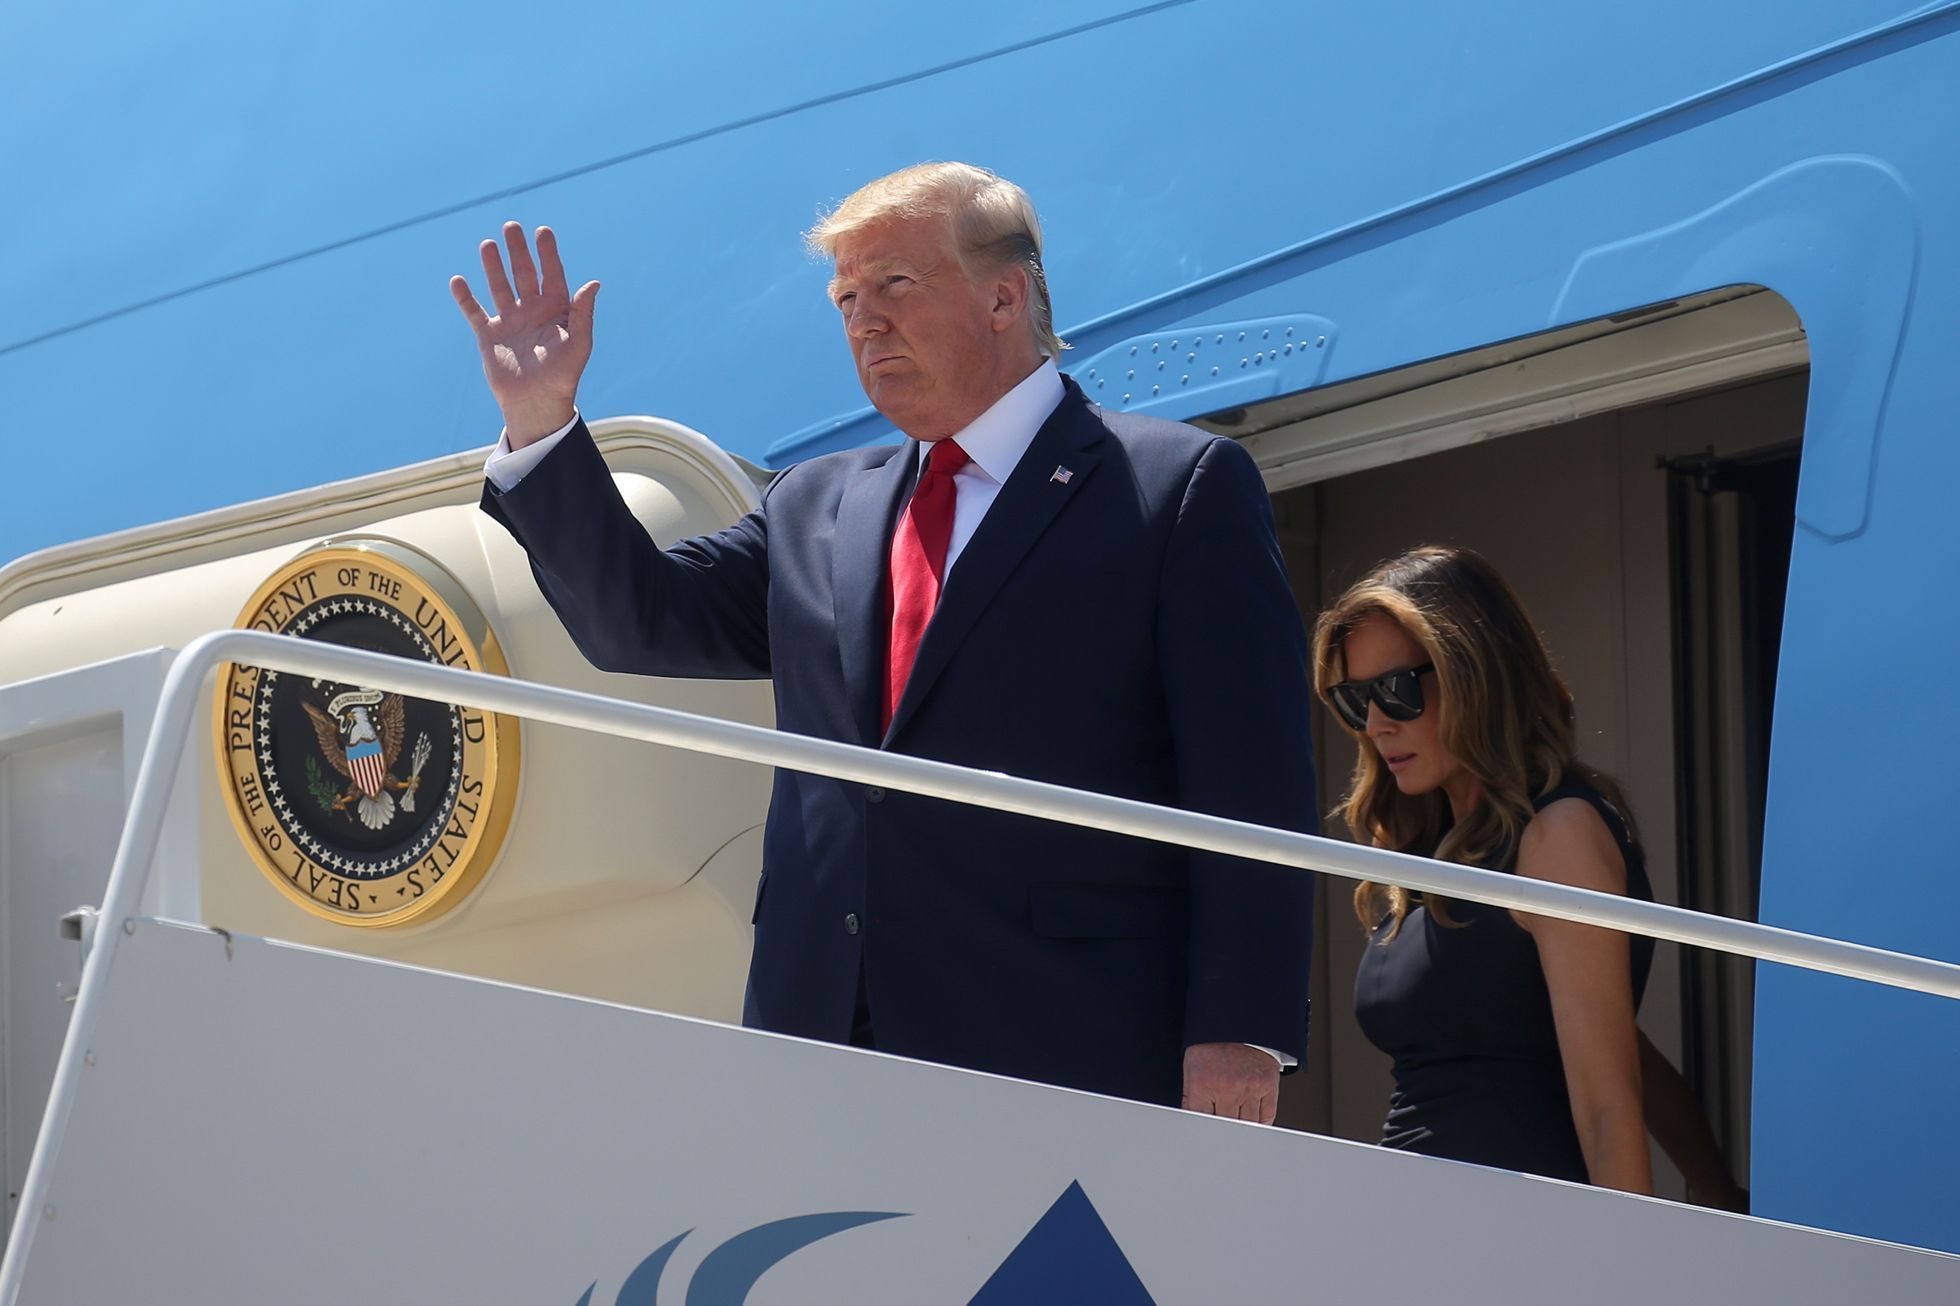 Prezident Donald Trump a jeho manželka při příletu do El Pasa